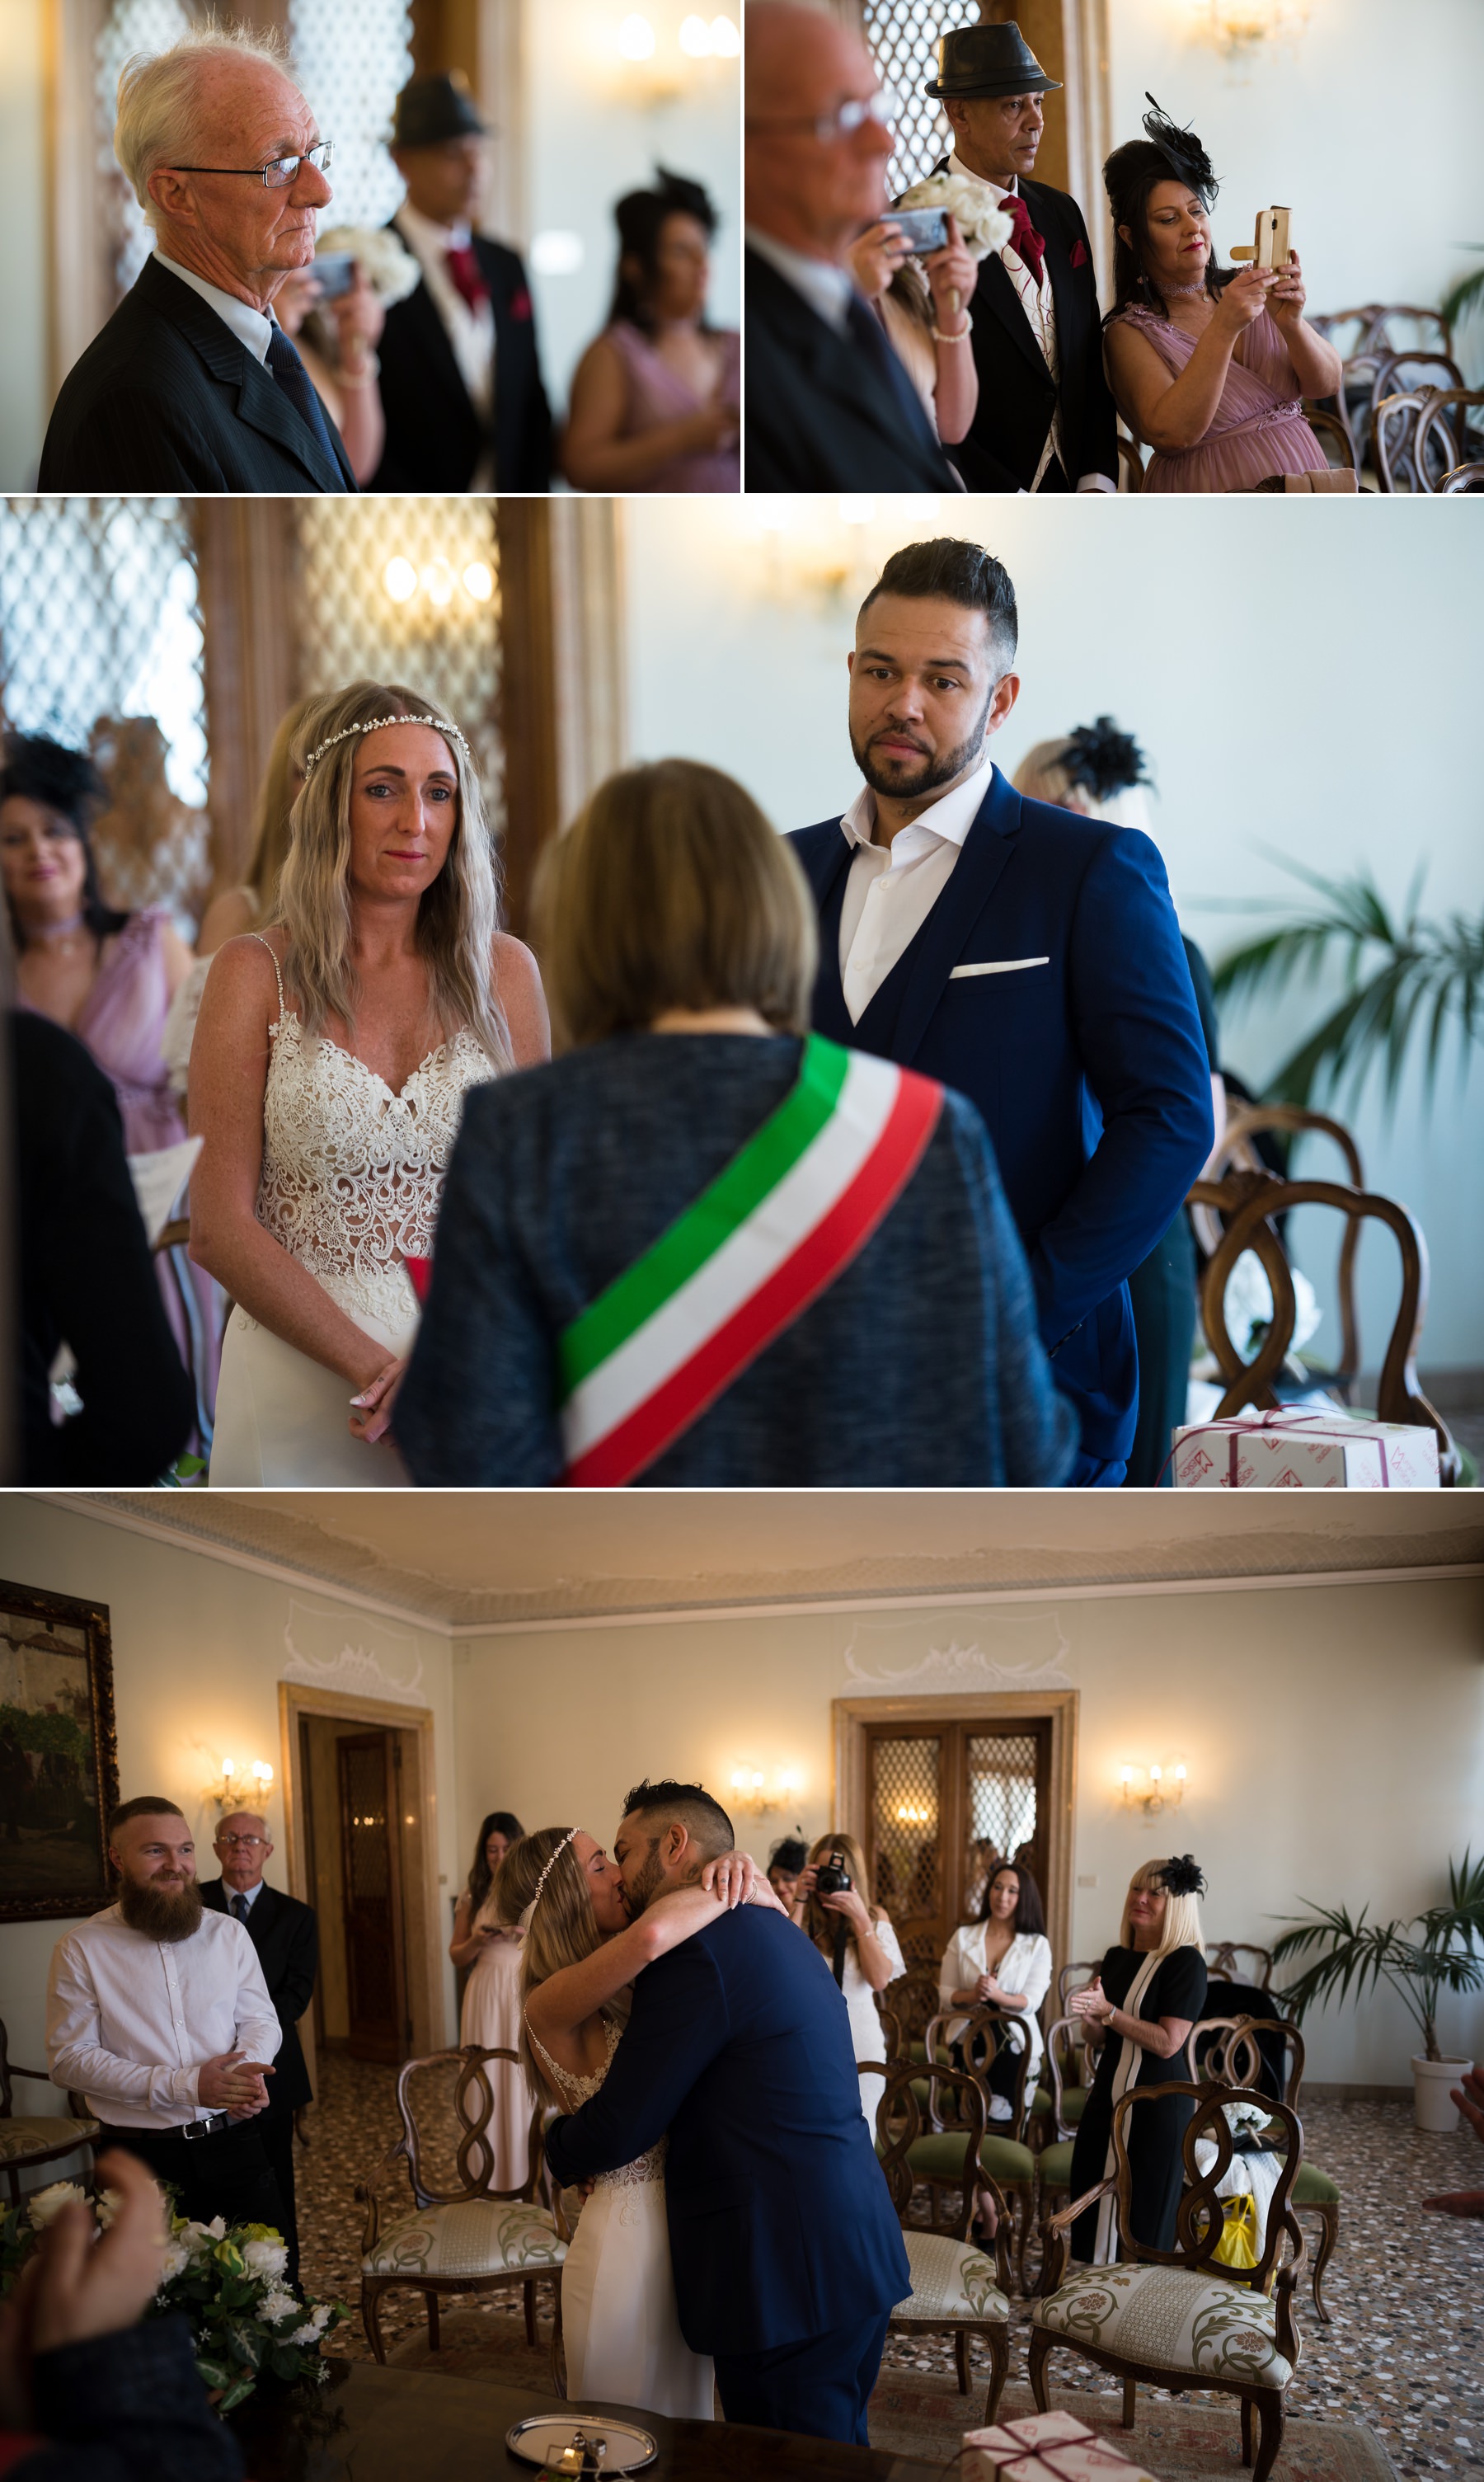 Palazzo Cavalli Venice wedding ring exchange 